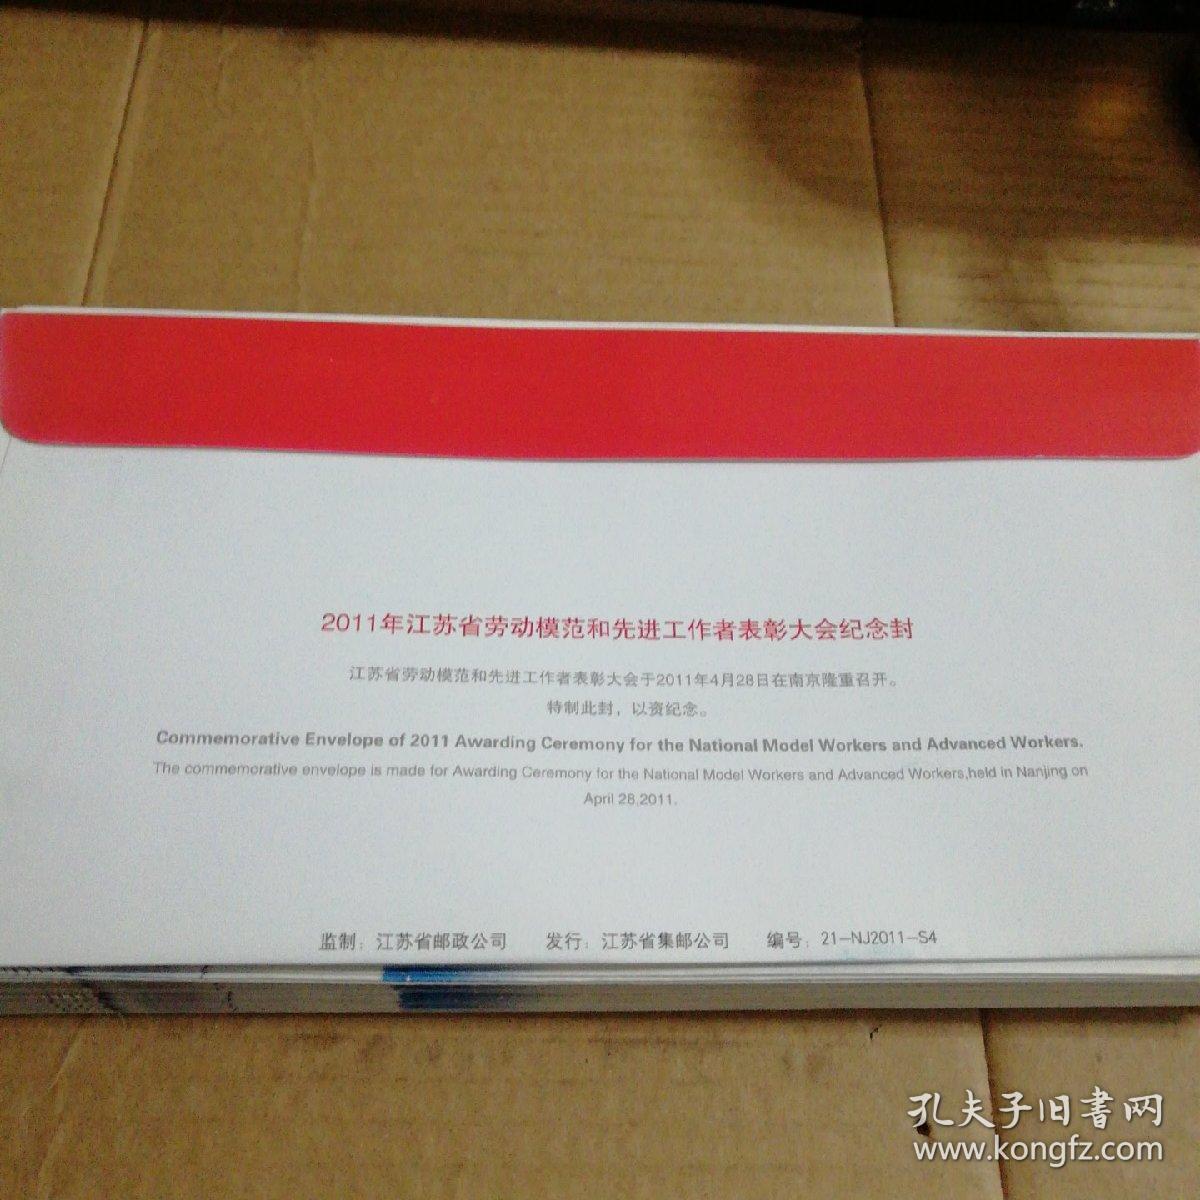 2011年江苏省劳动模范和先进工作者表彰大会纪念封(邮资1.2)